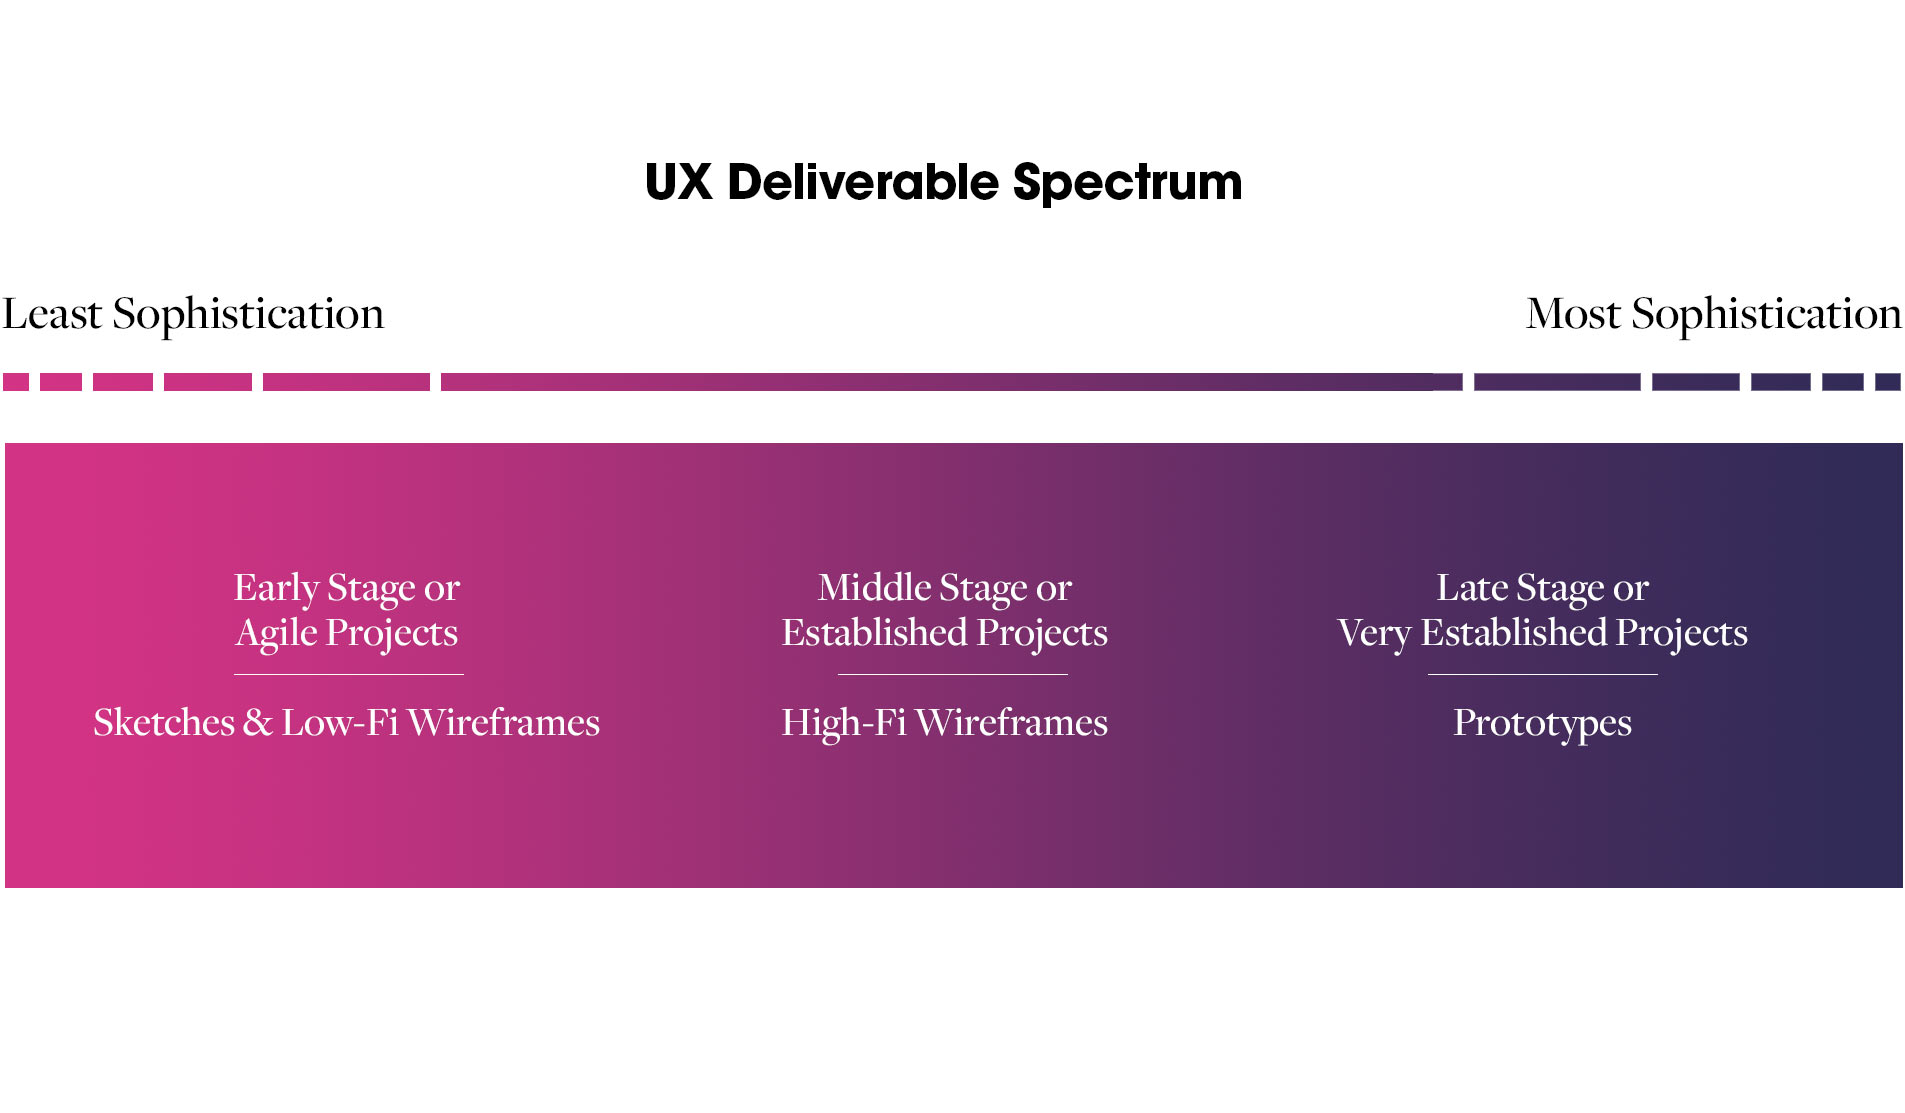 The UX Deliverable Spectrum.